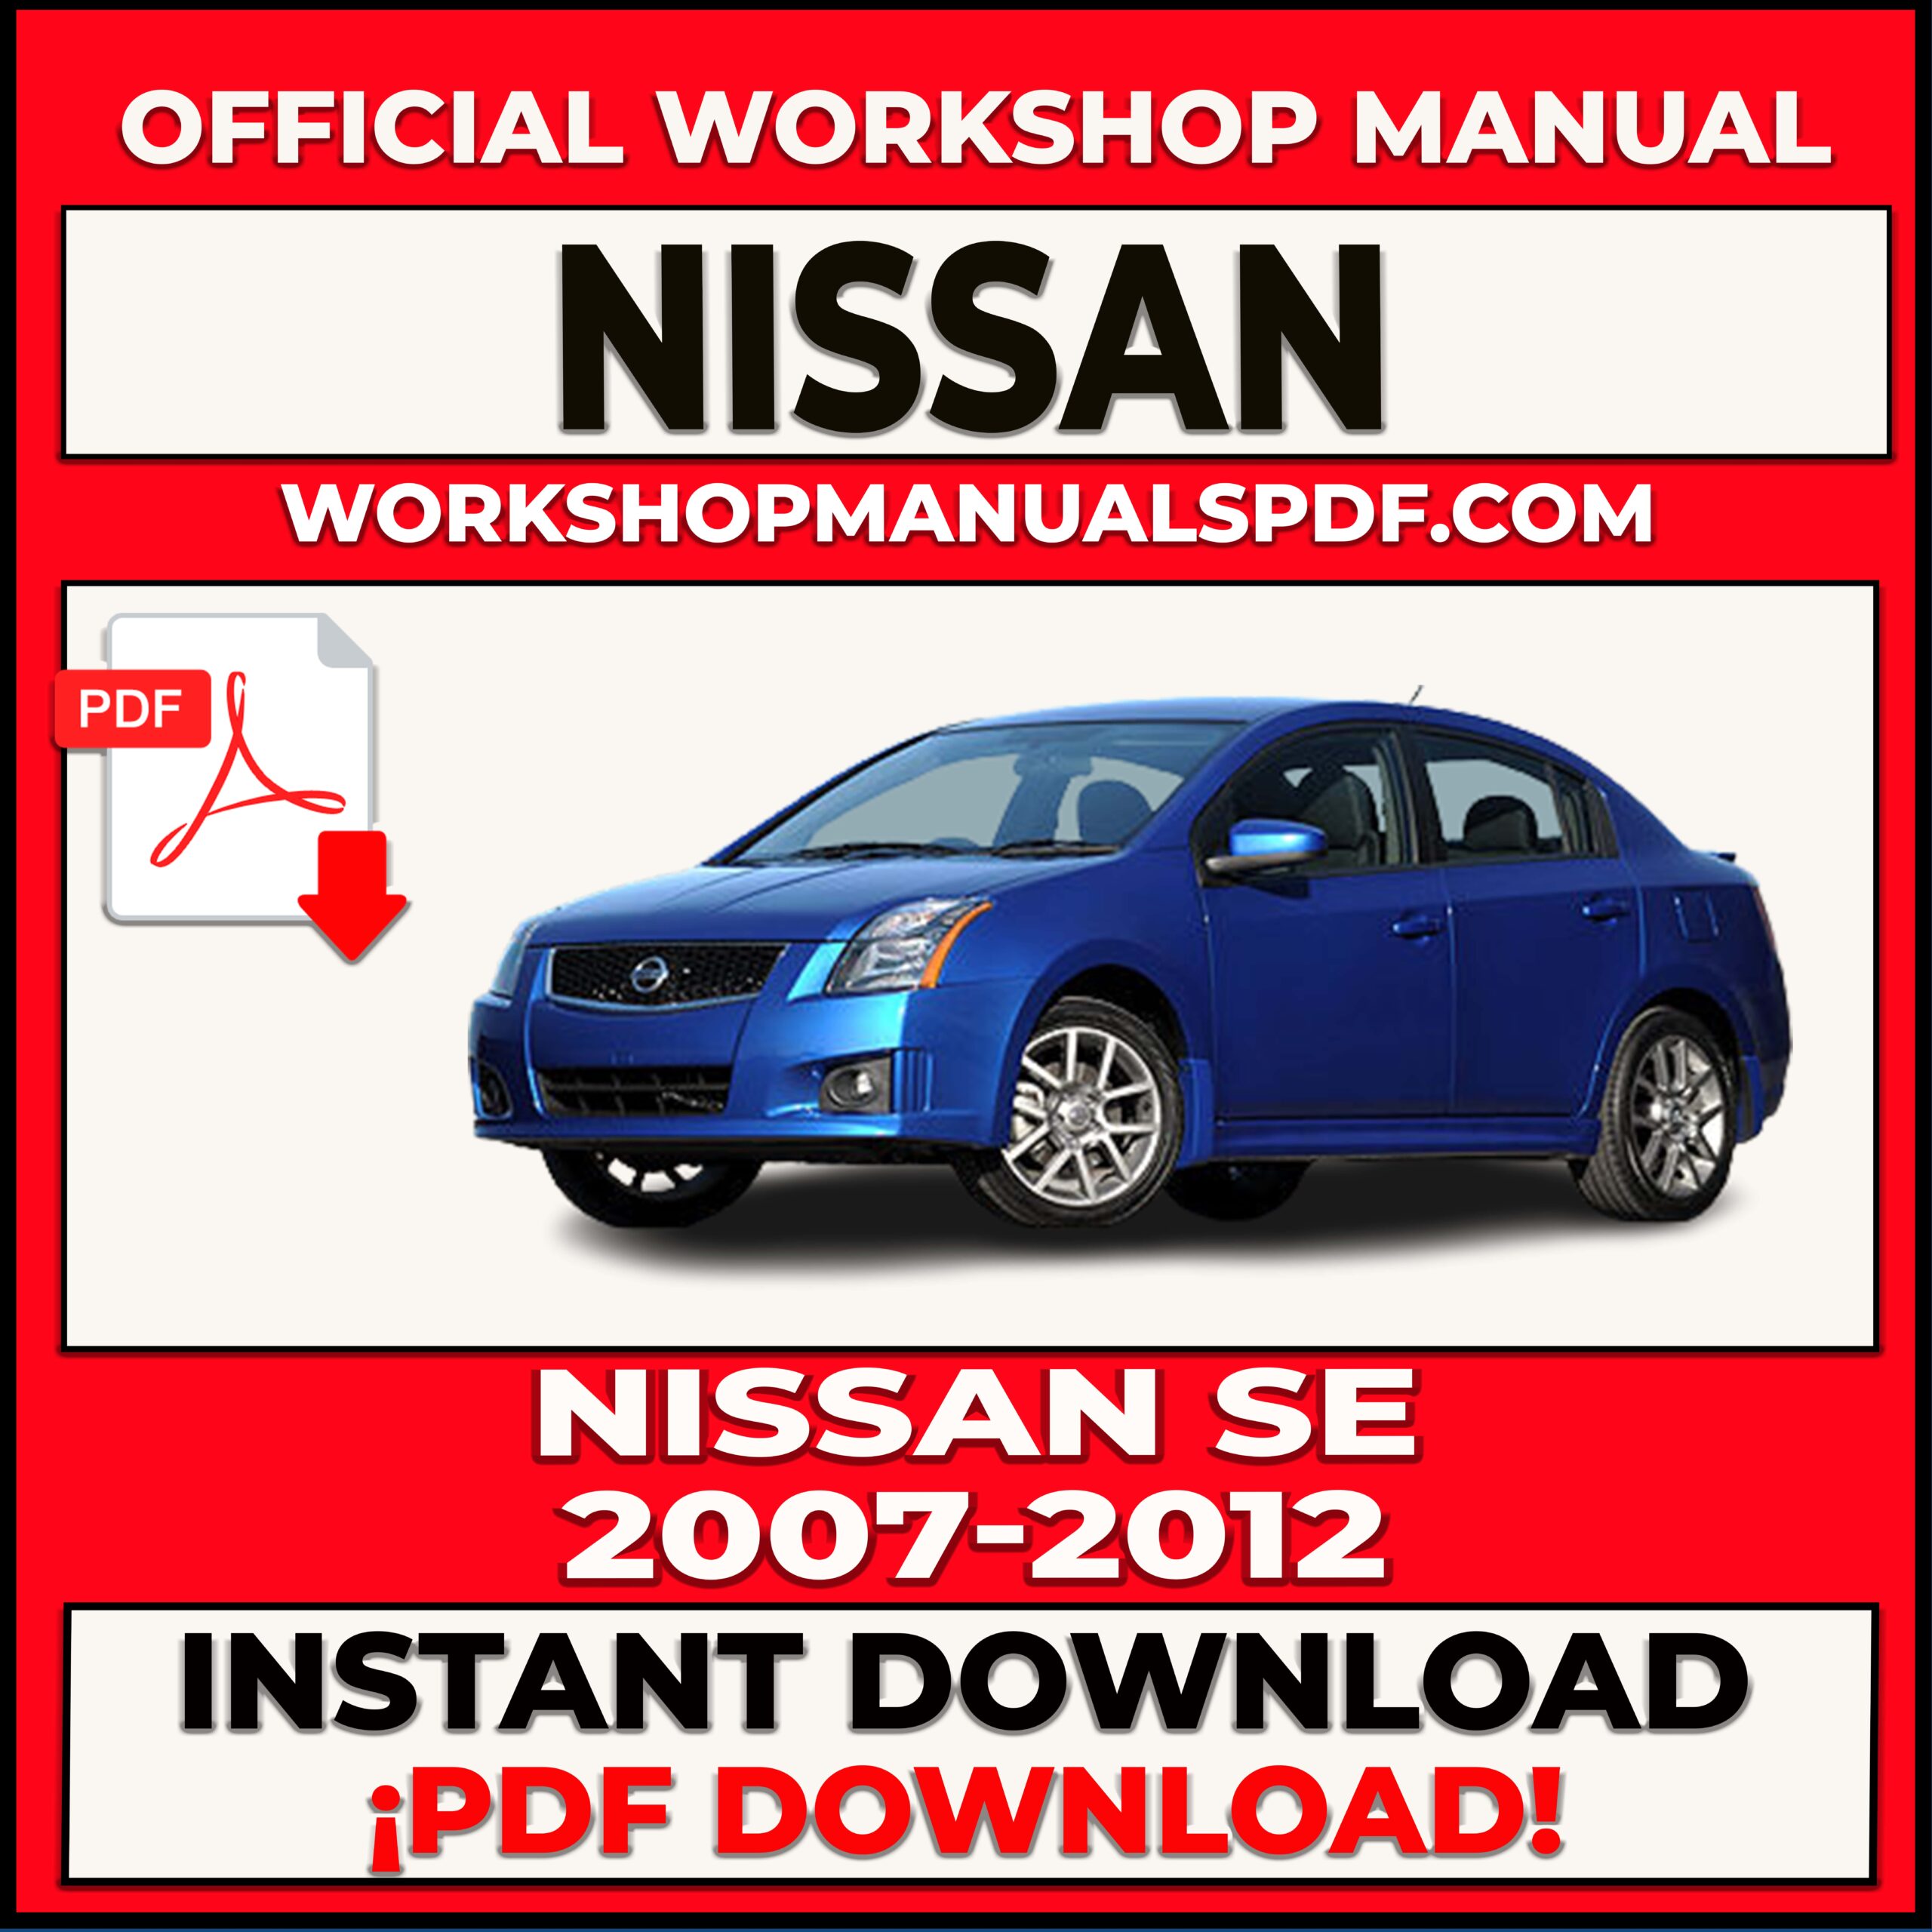 Nissan SE 2007-2012 Workshop Repair Manual